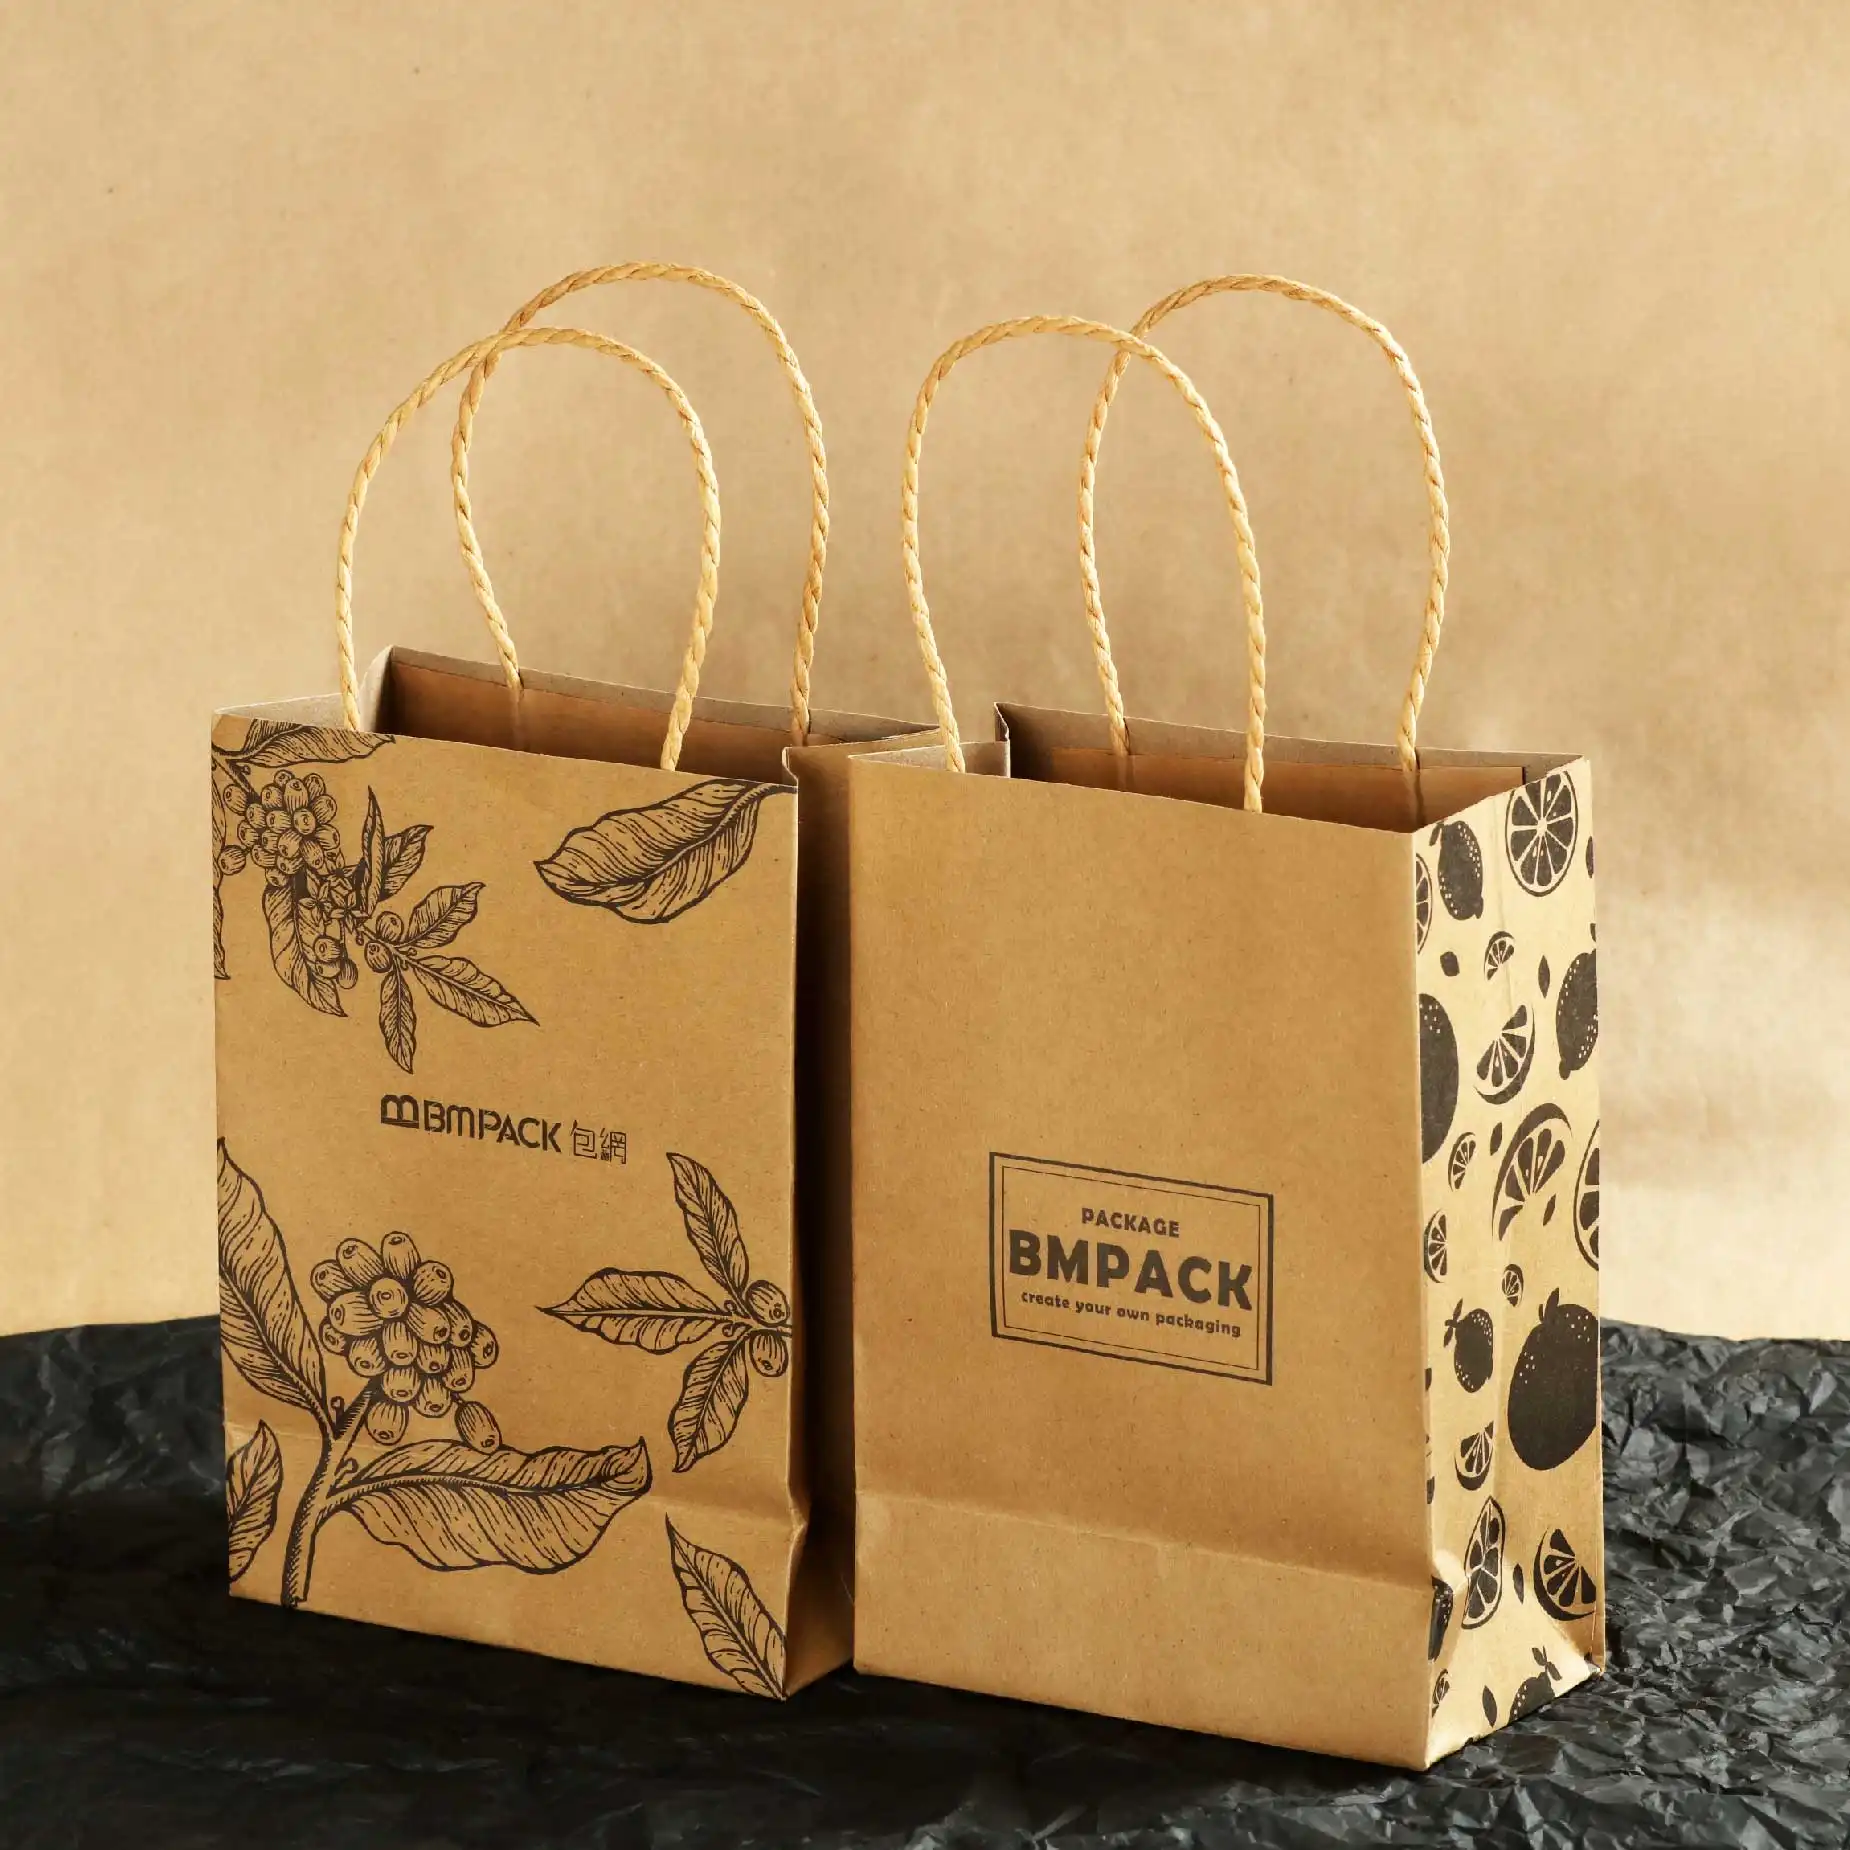 產品樣版3: 兩個牛皮紙袋展示了正面背面及側面並印有“BM Pack包網”